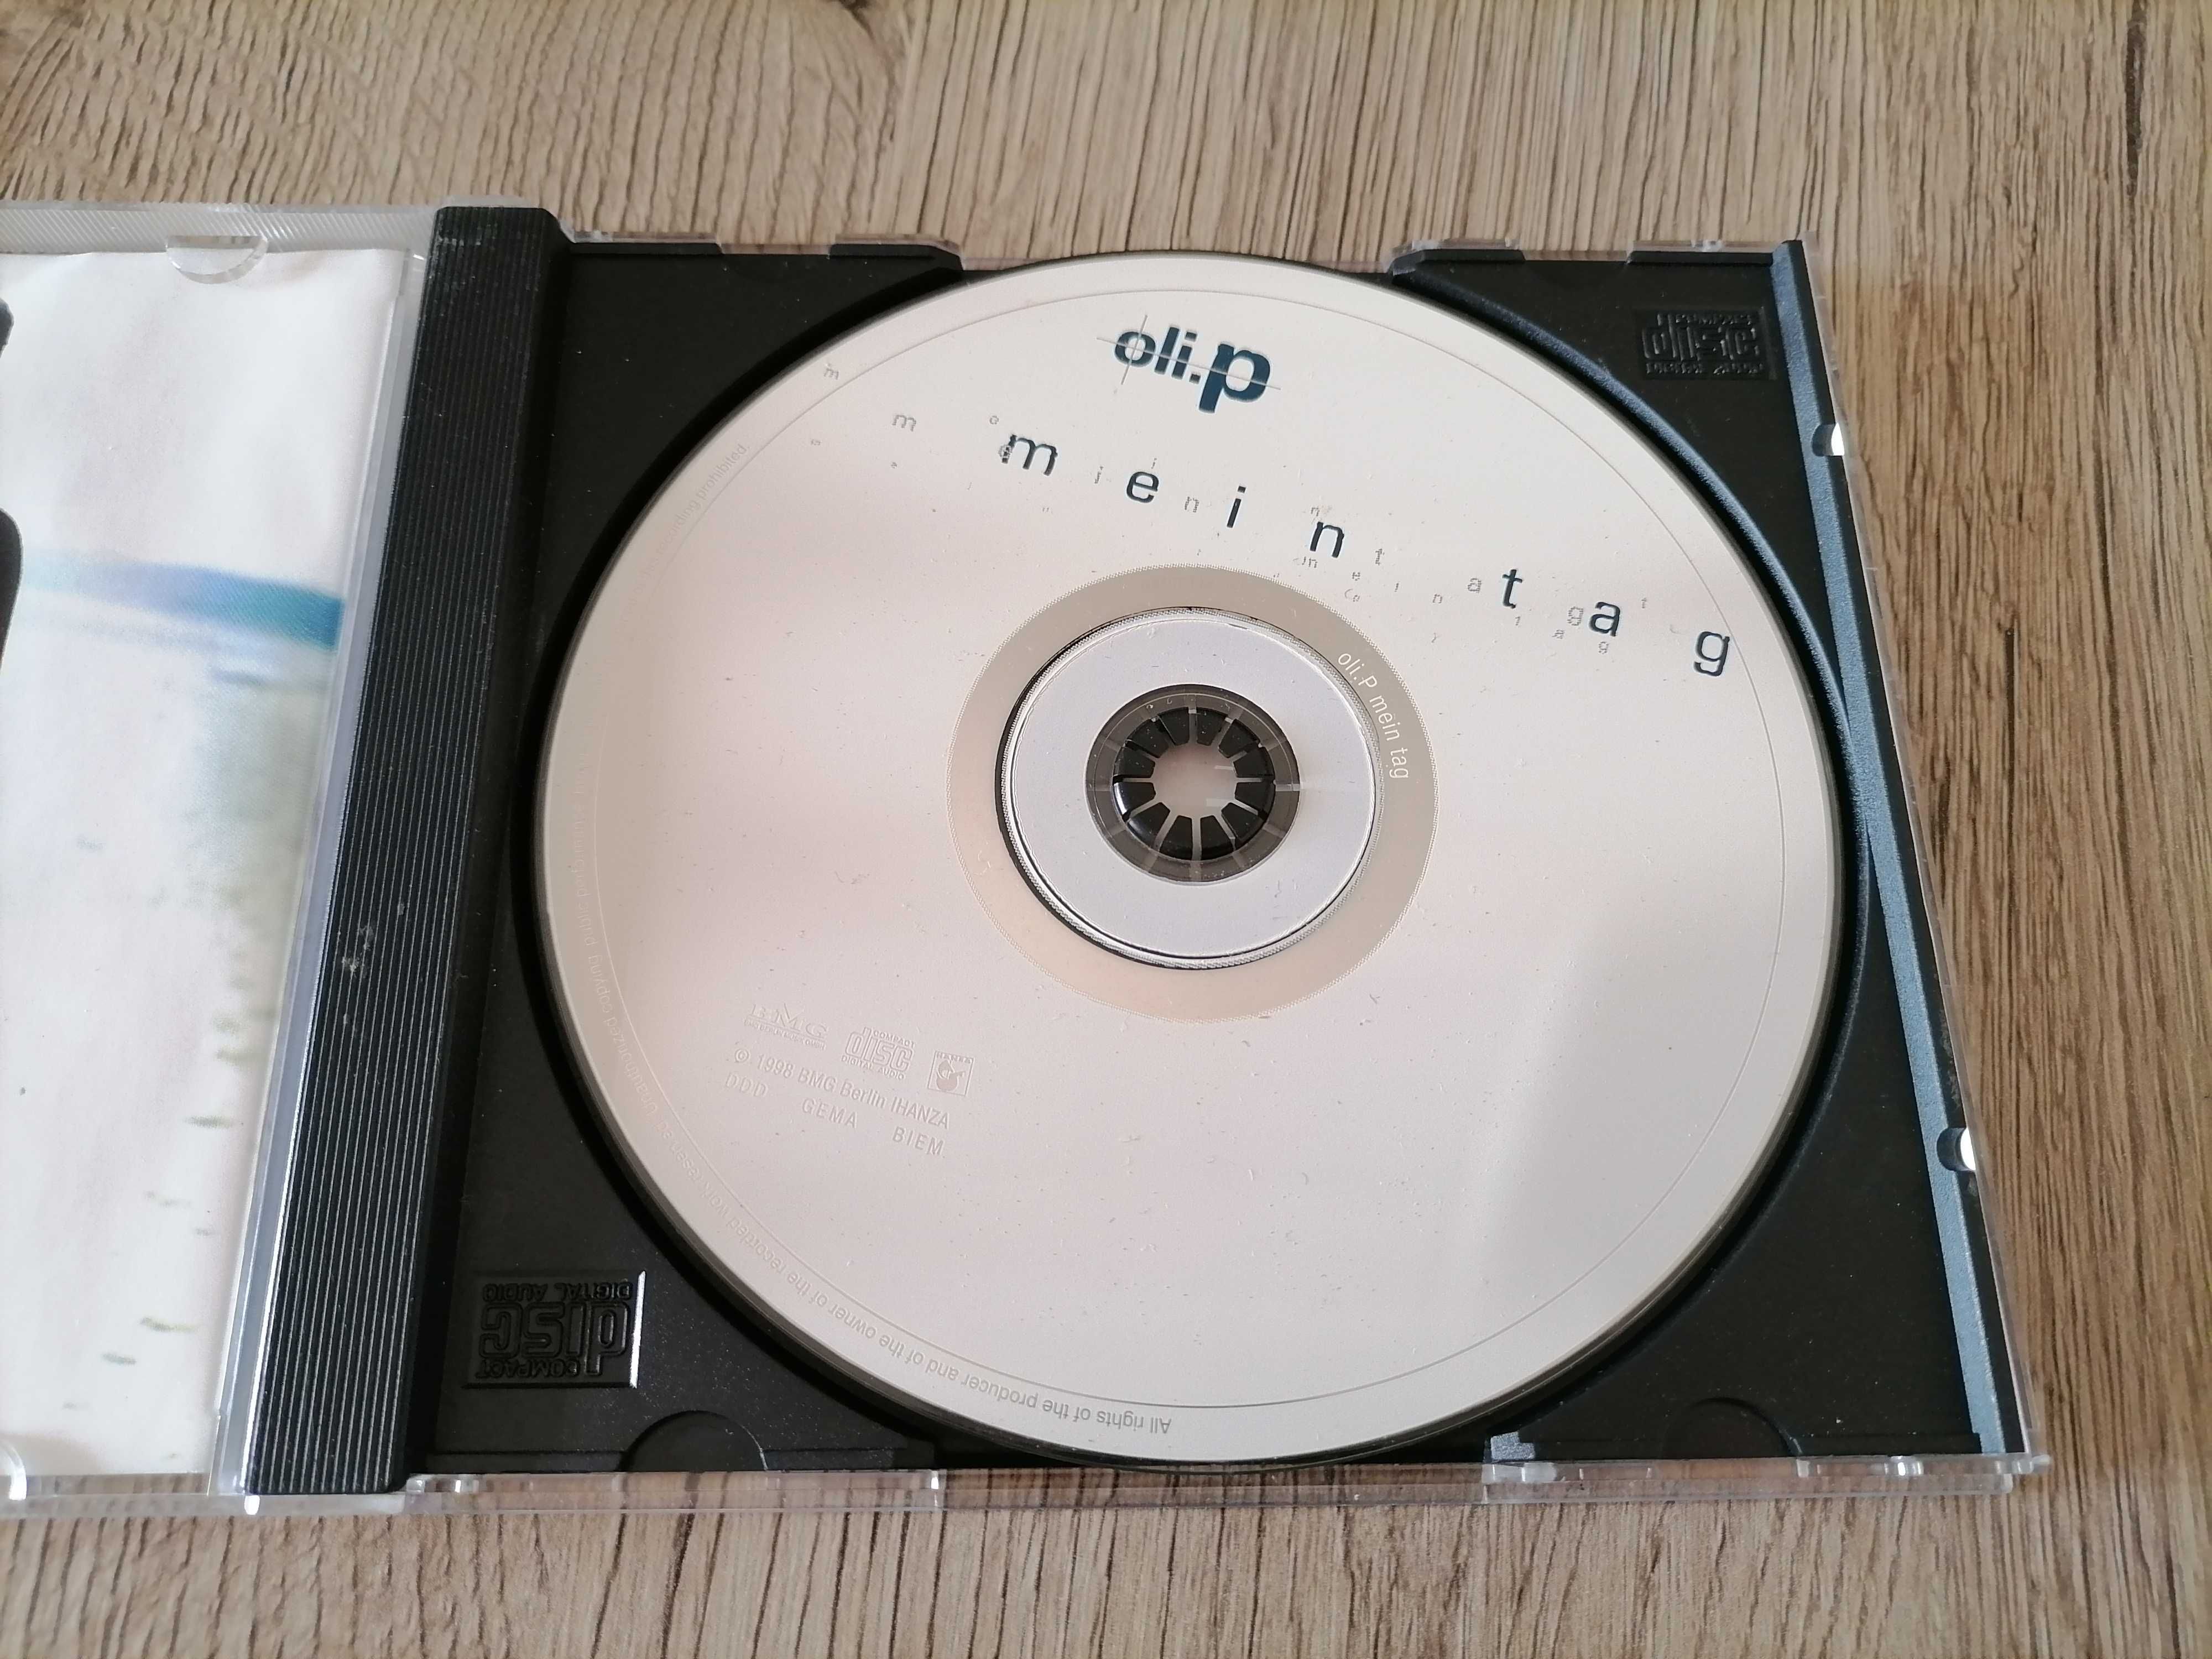 Oli.P – Mein Tag CD